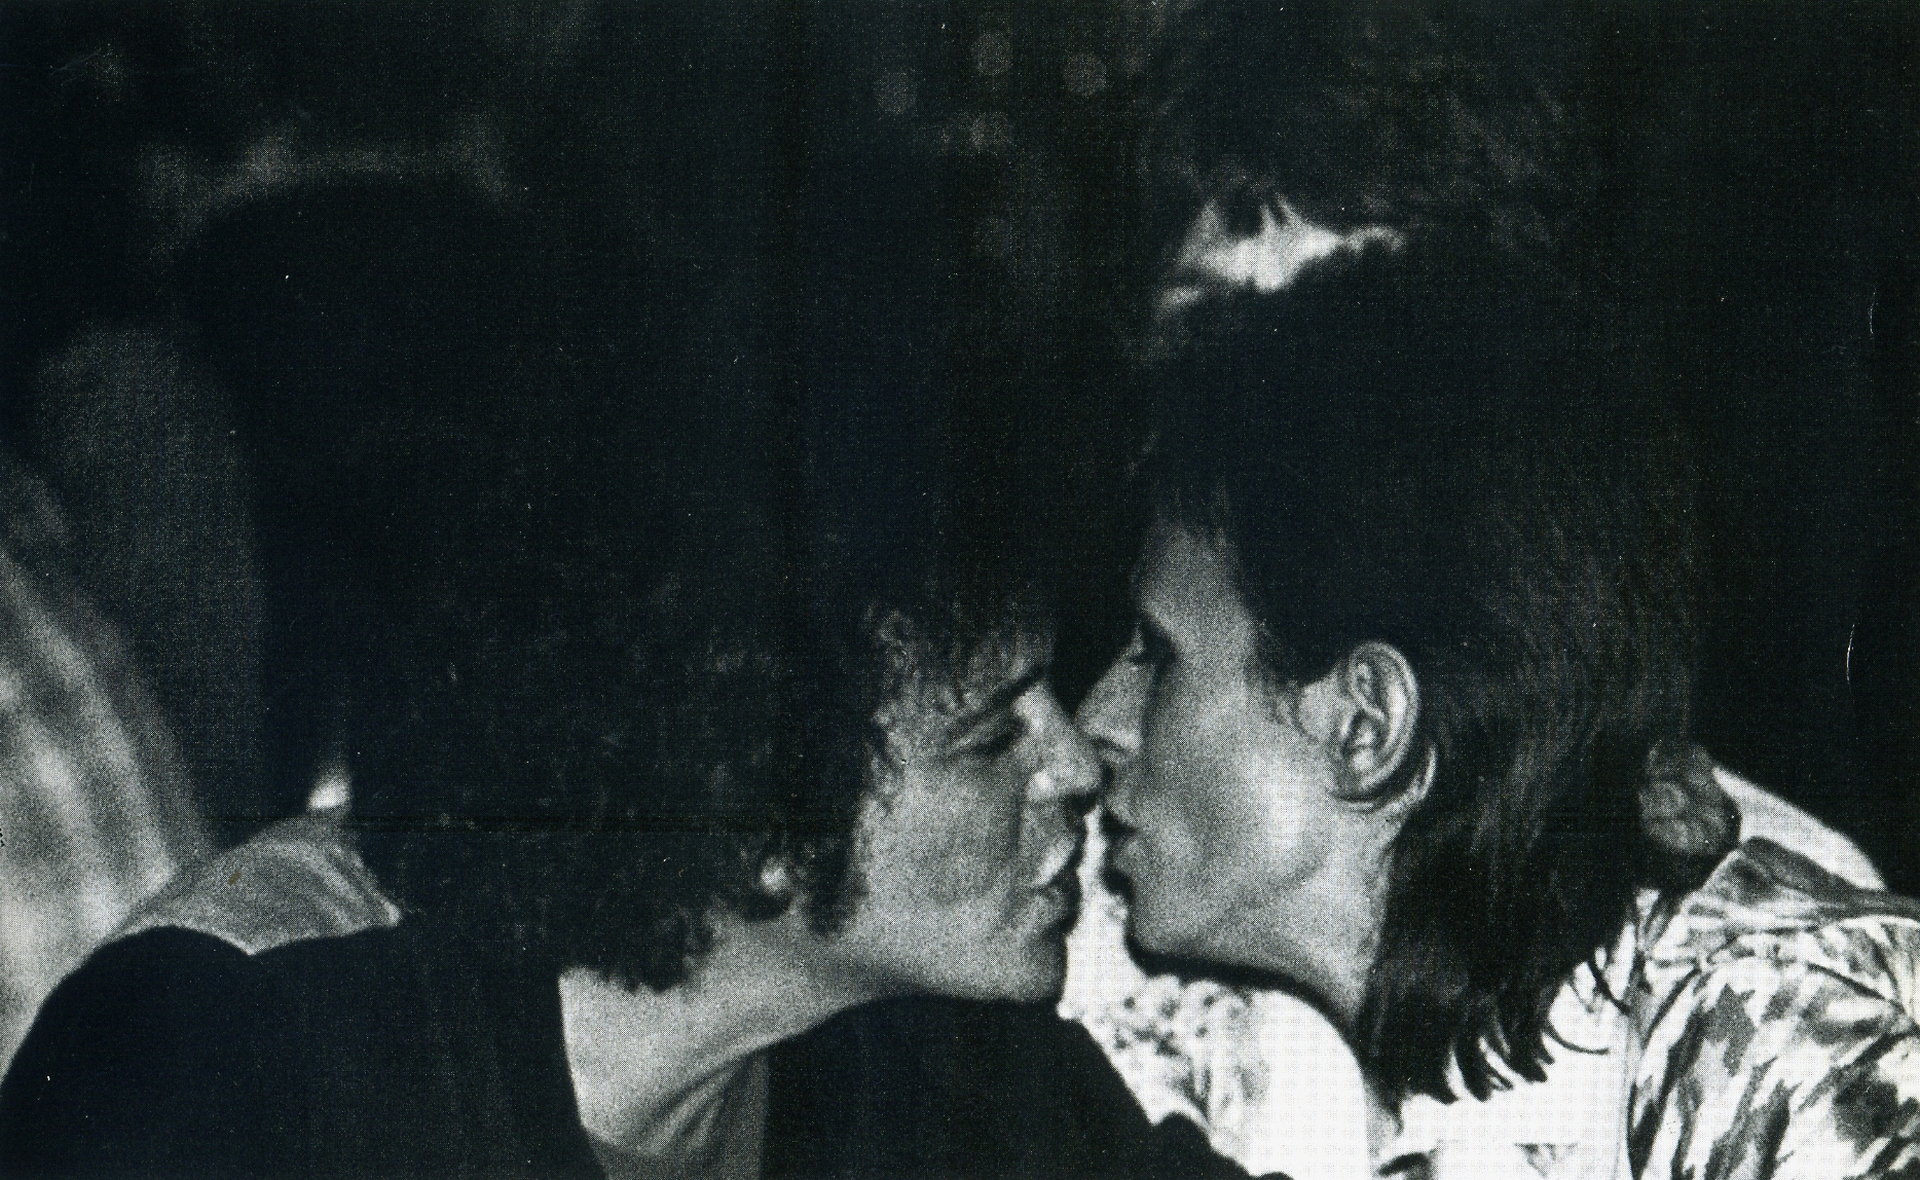 Ο Lou Reed και o David Bowie είναι έτοιμοι να αγαπηθούν με ένα φιλί υπό τις ευλογίες του Mick Jagger (Mick Rock)